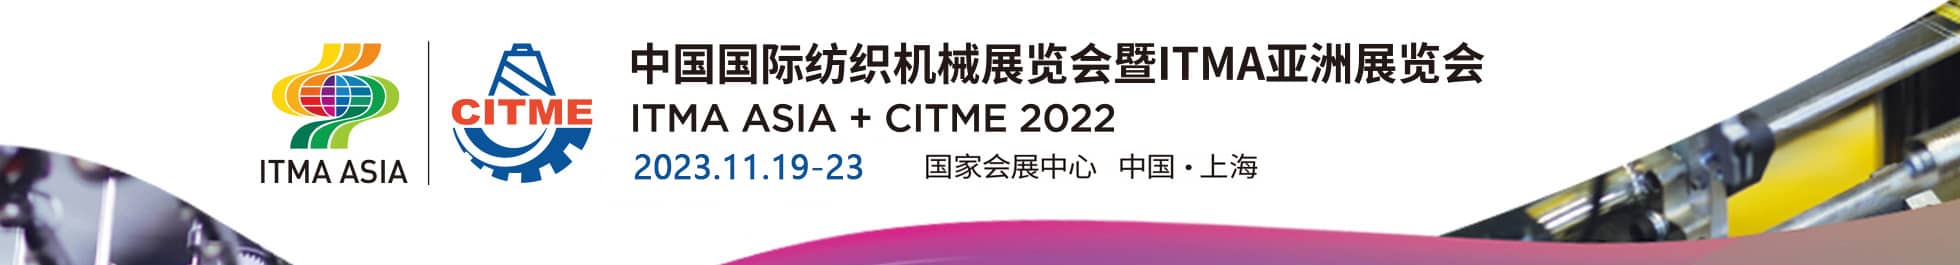 2022中国国际纺织机械展览会暨ITMA亚洲展览会信息验证